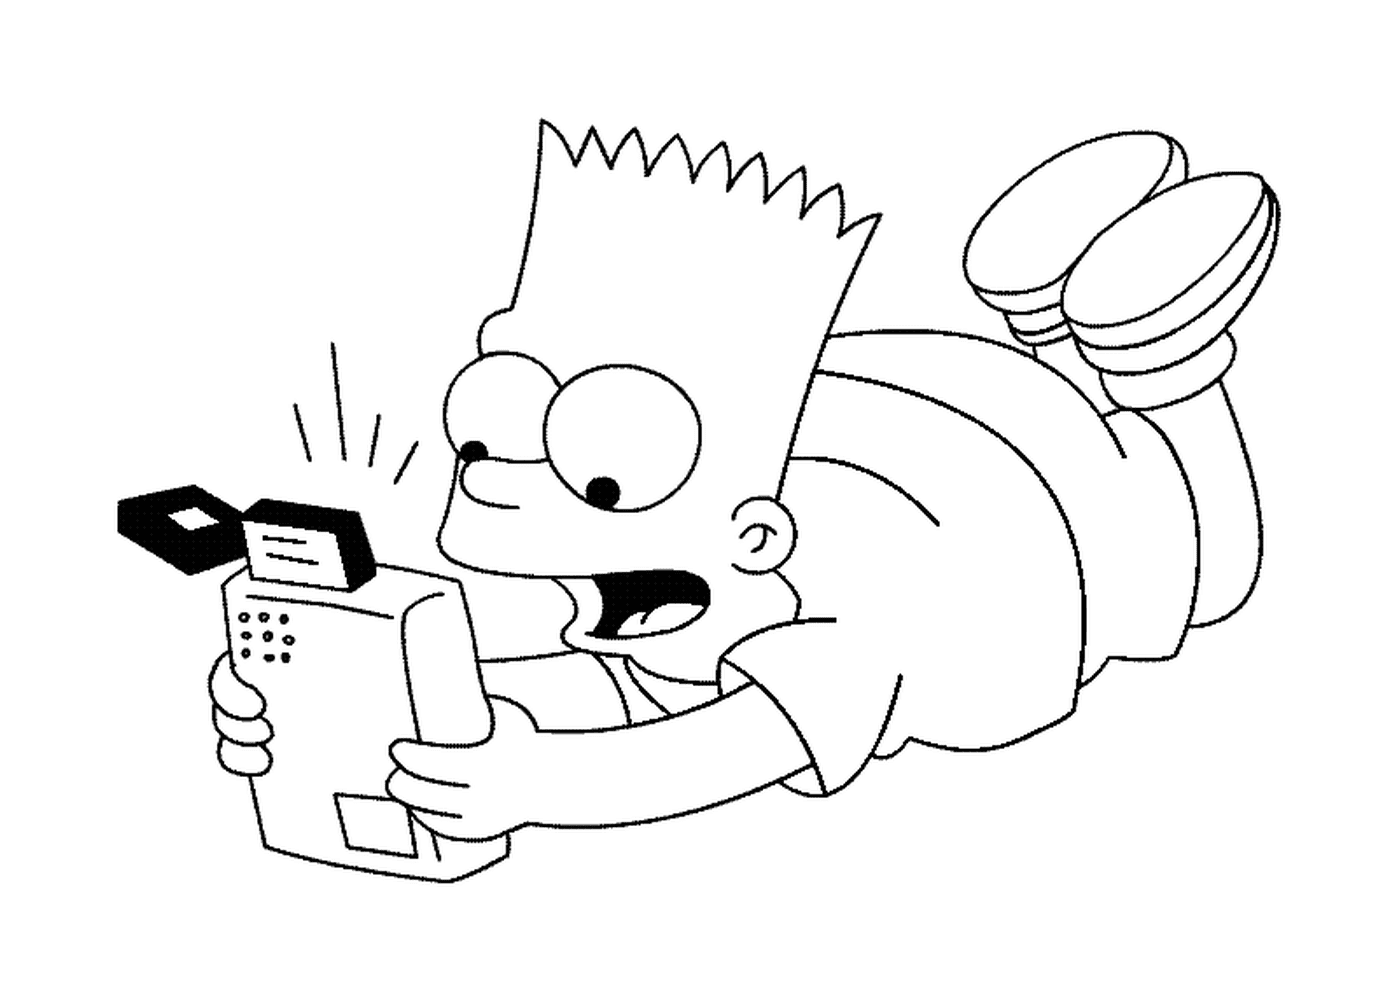  Барт играет с игровой консолью 